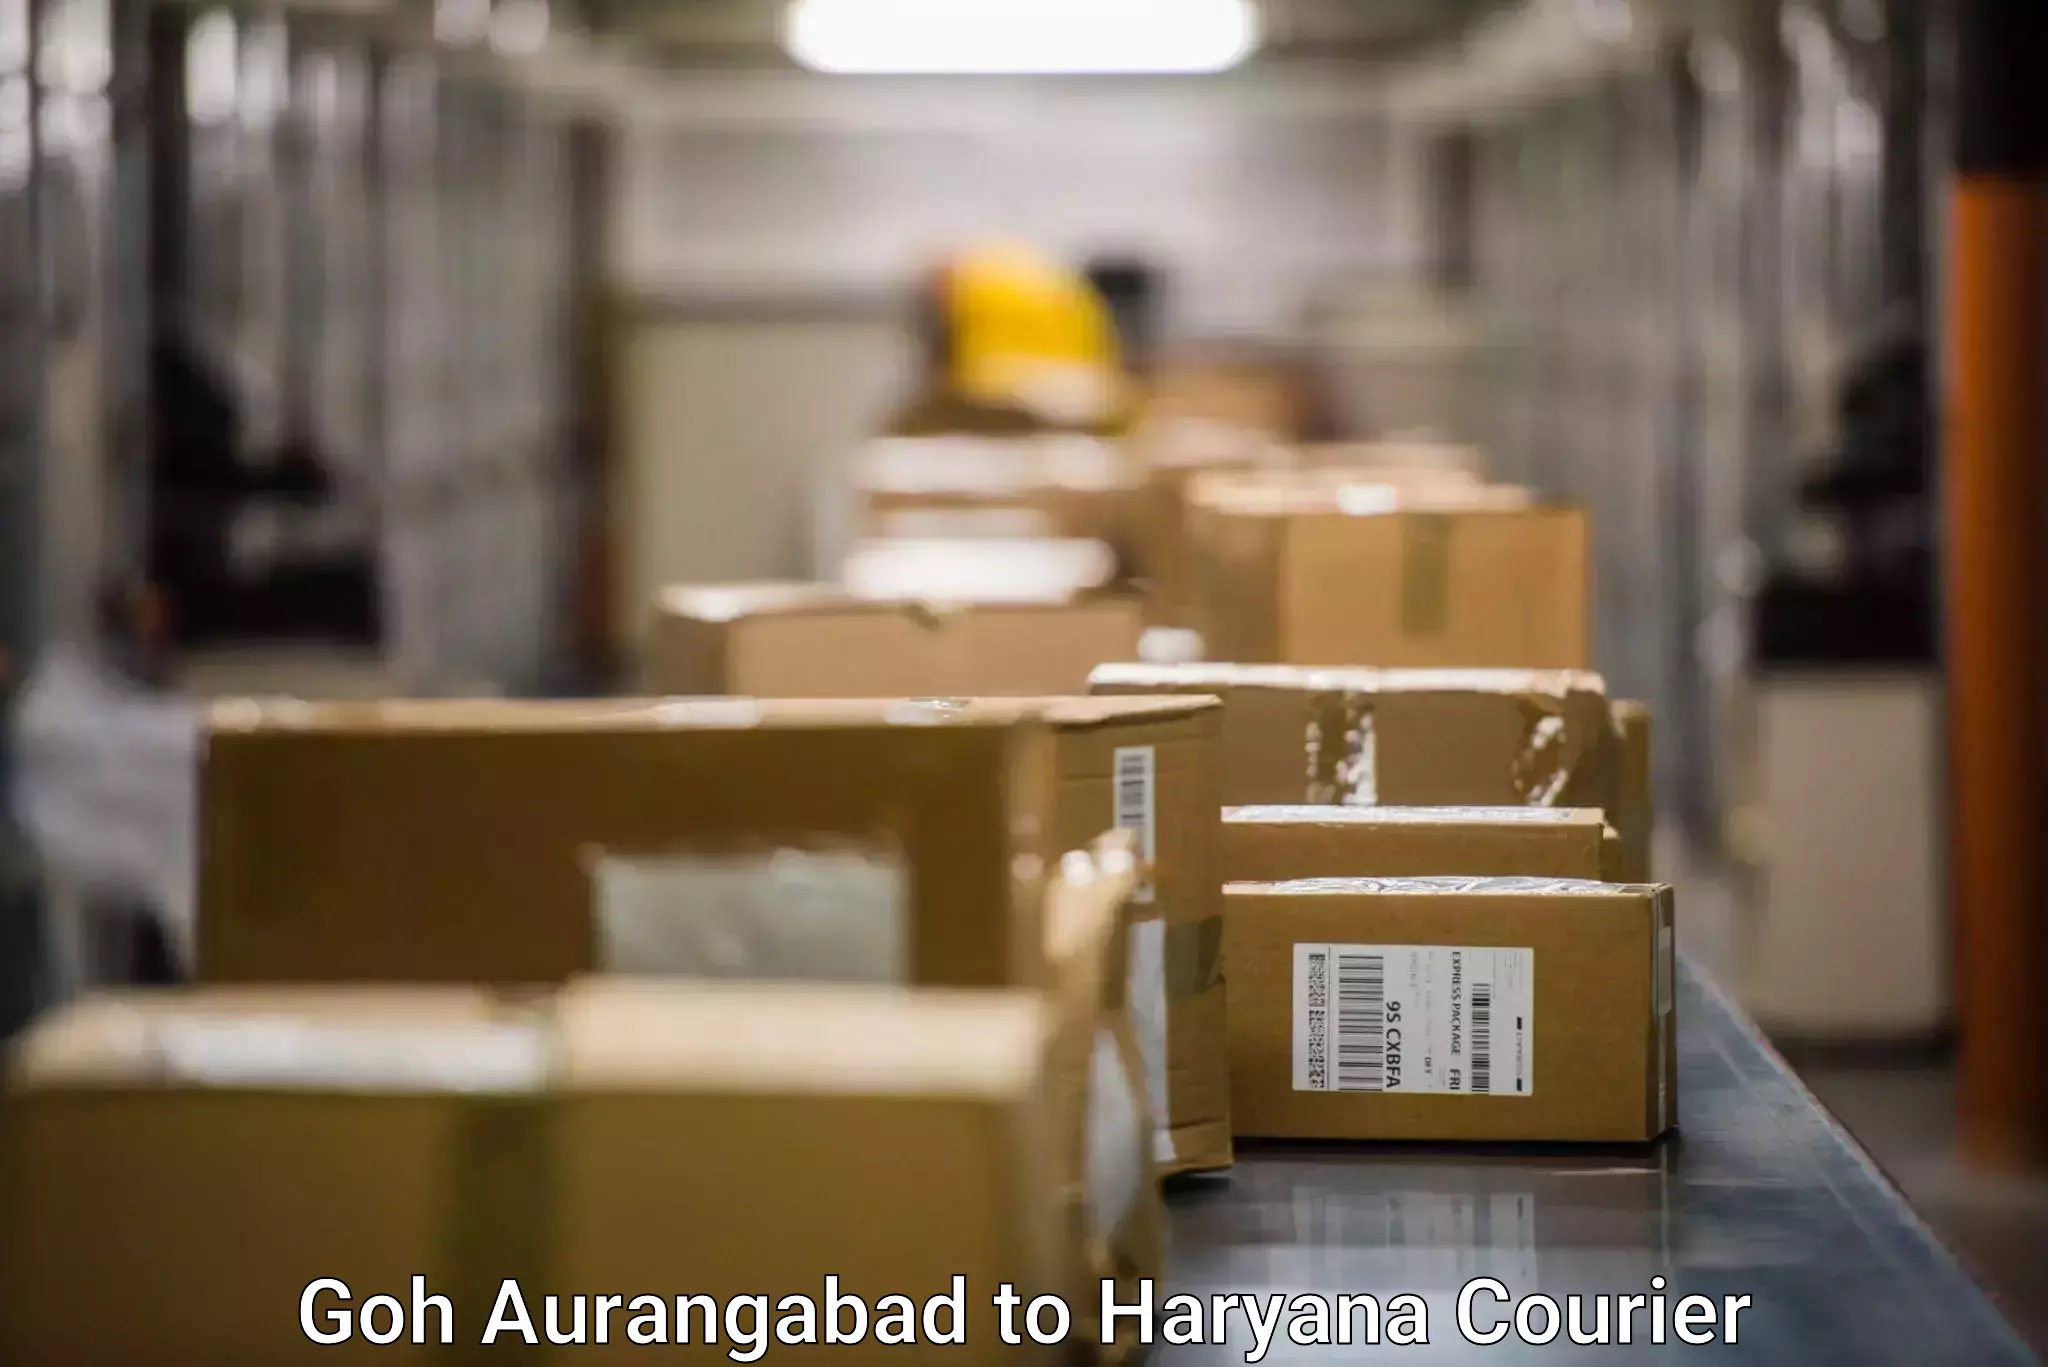 Comprehensive parcel tracking in Goh Aurangabad to Loharu